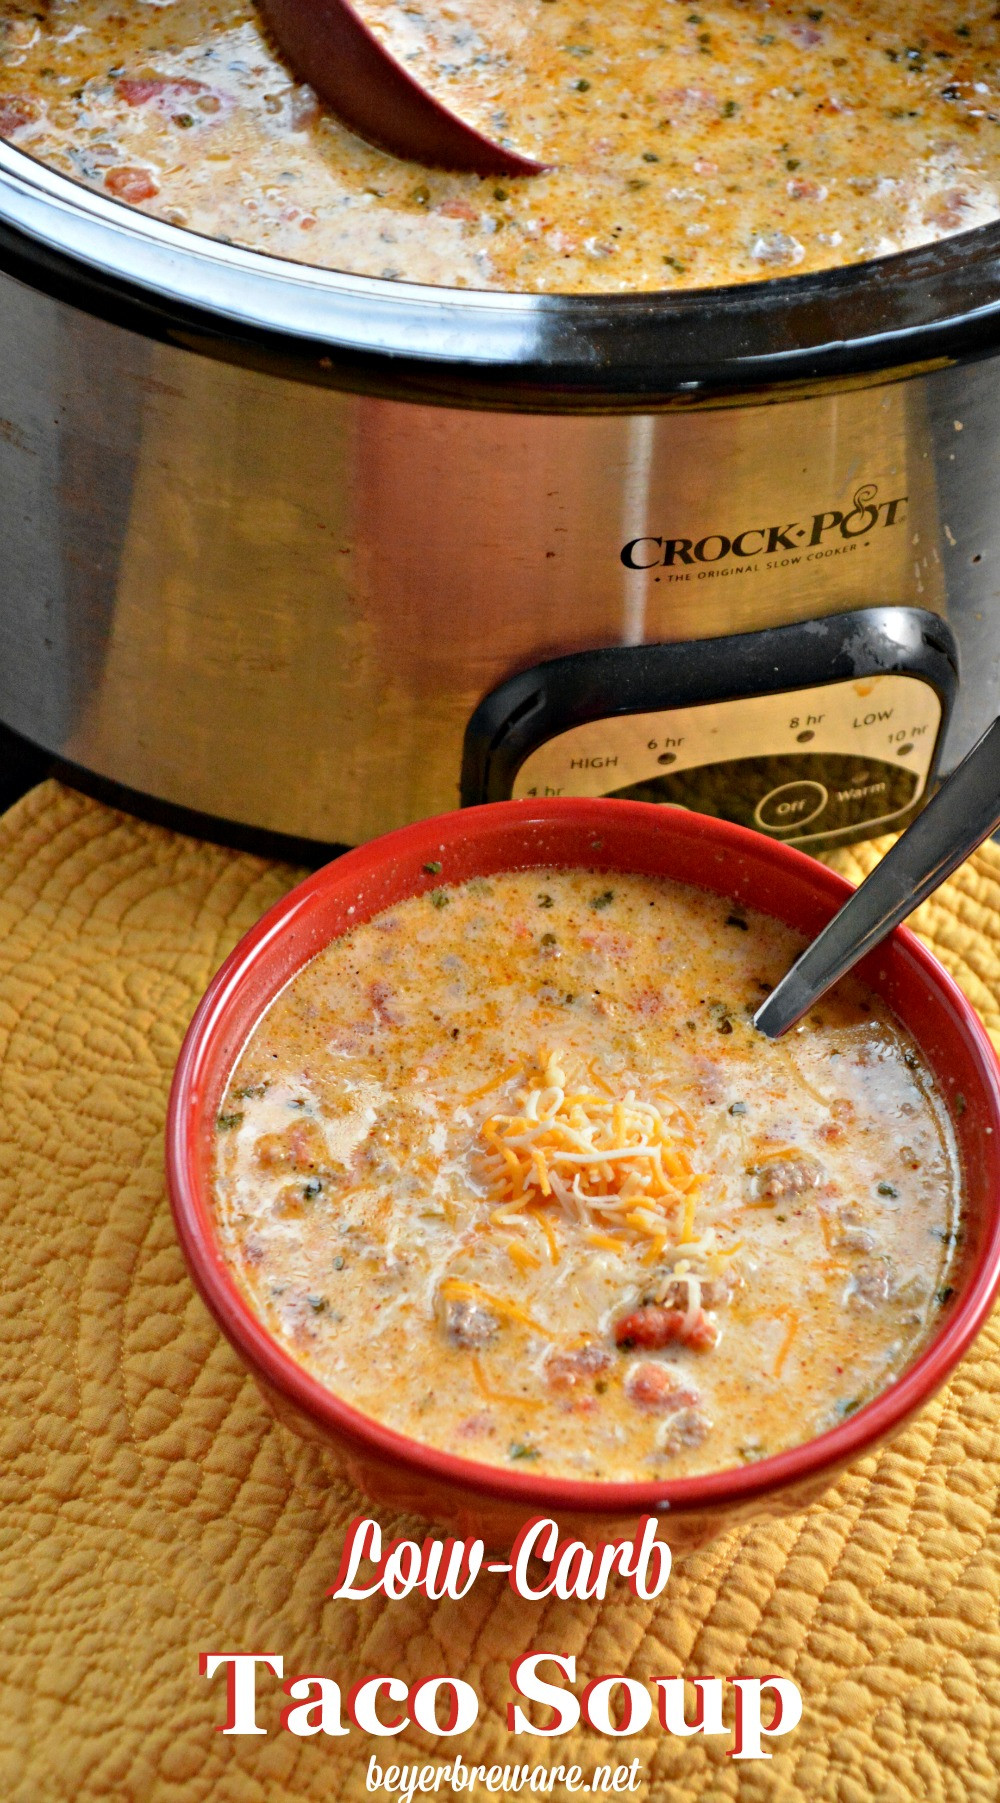 Crock Pot Keto Recipes Low Carb
 Crock Pot Low Carb Taco Soup Beyer Beware